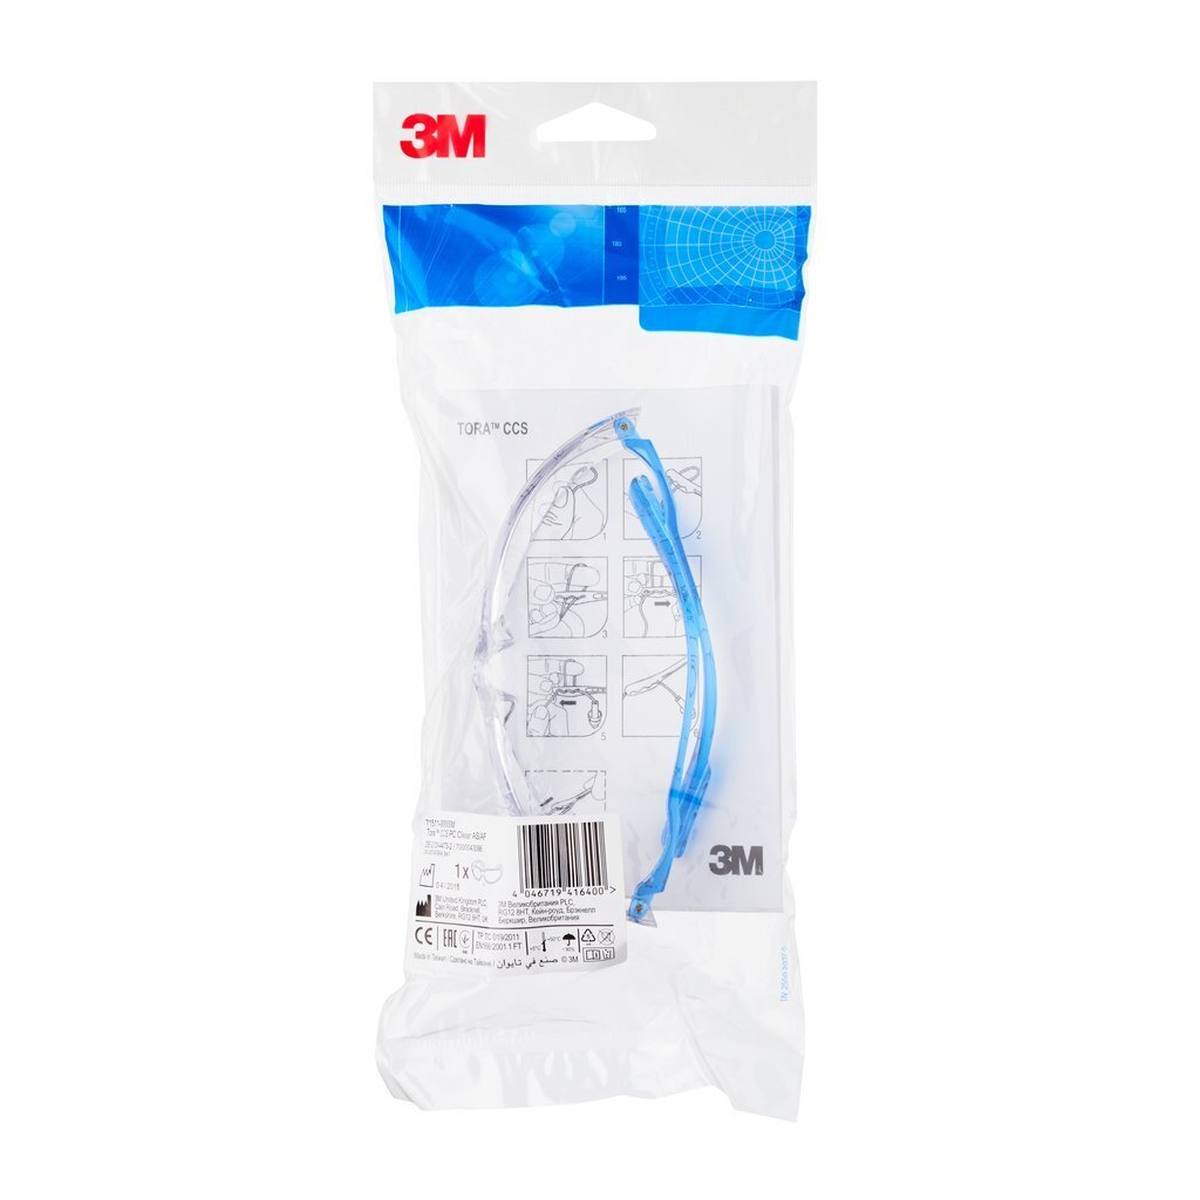 3M Lunettes de protection Tora CCS AS/AF/UV, PC, claires (combinables avec tous les bouchons d'oreilles 3M avec cordon plastique)